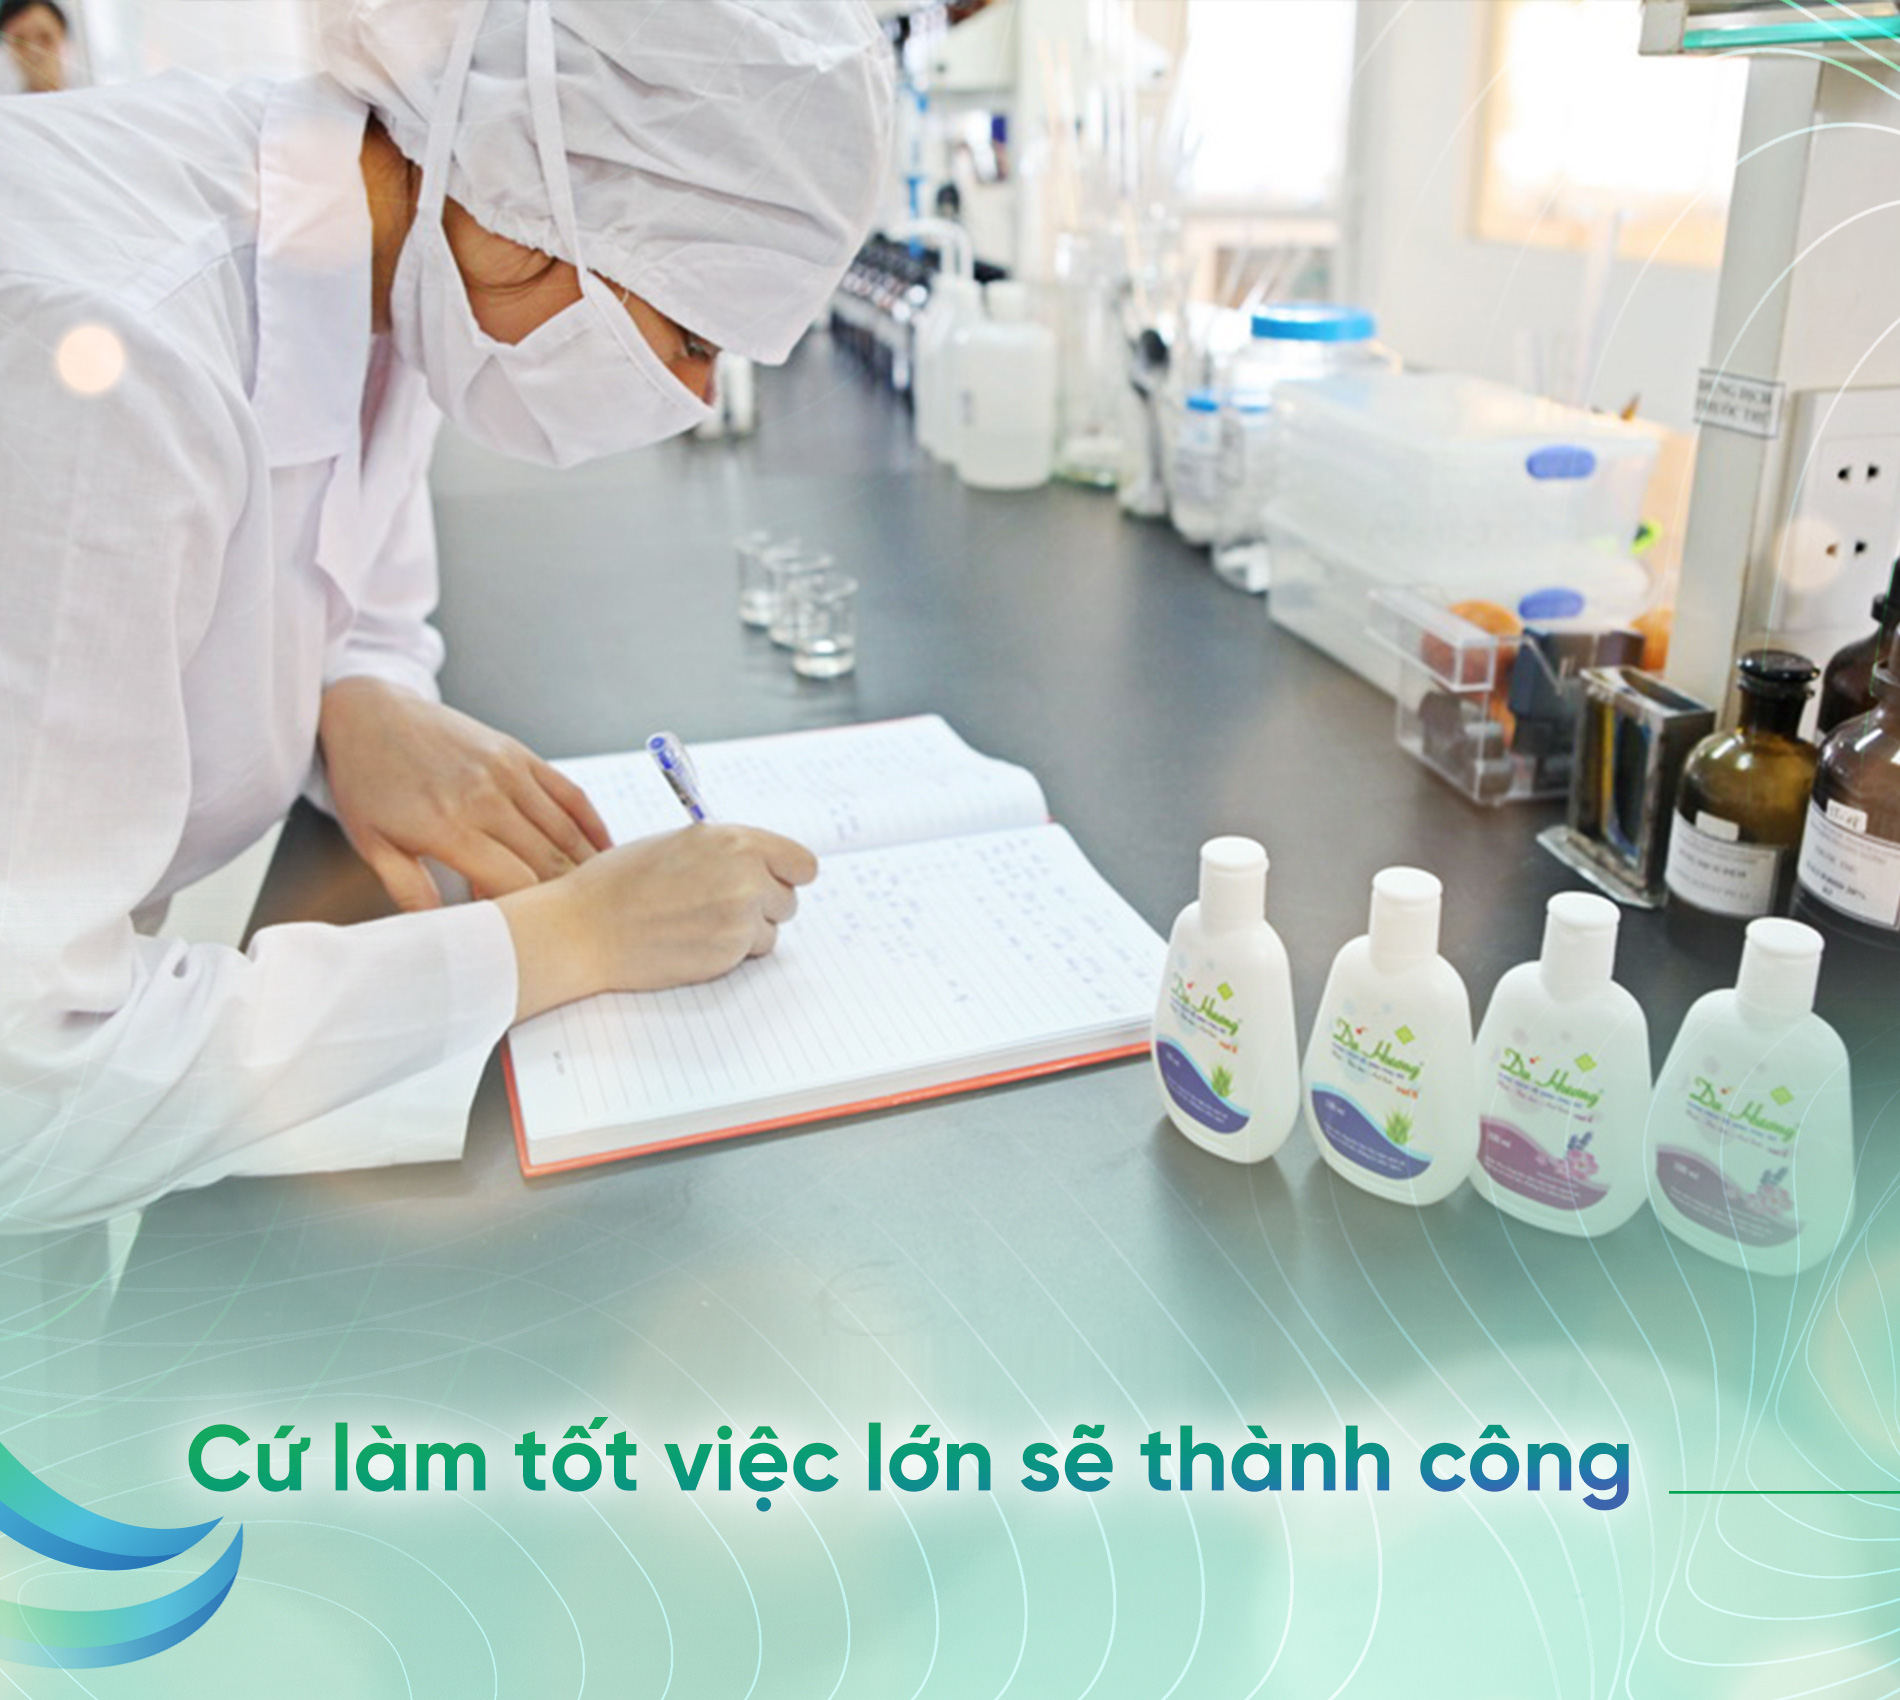 Dược sĩ Trần Ngọc Ánh: 20 năm ước mơ phát triển thương hiệu Việt - Ảnh 6.